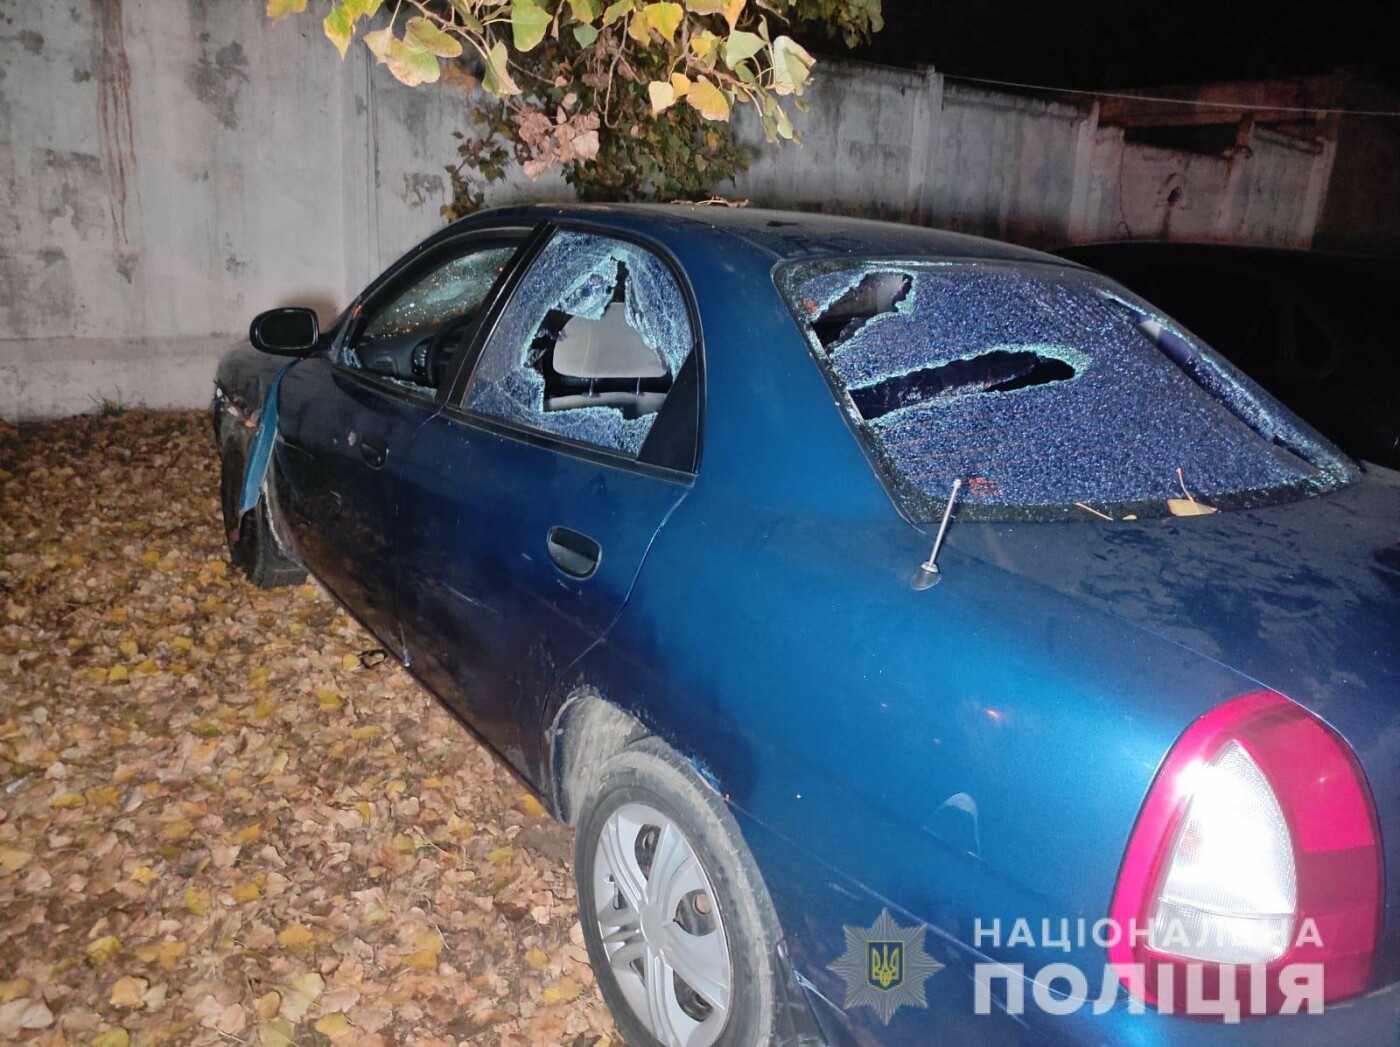  В Одессе задержали троих иностранцев, обворовавших автомобиль  — фото 1